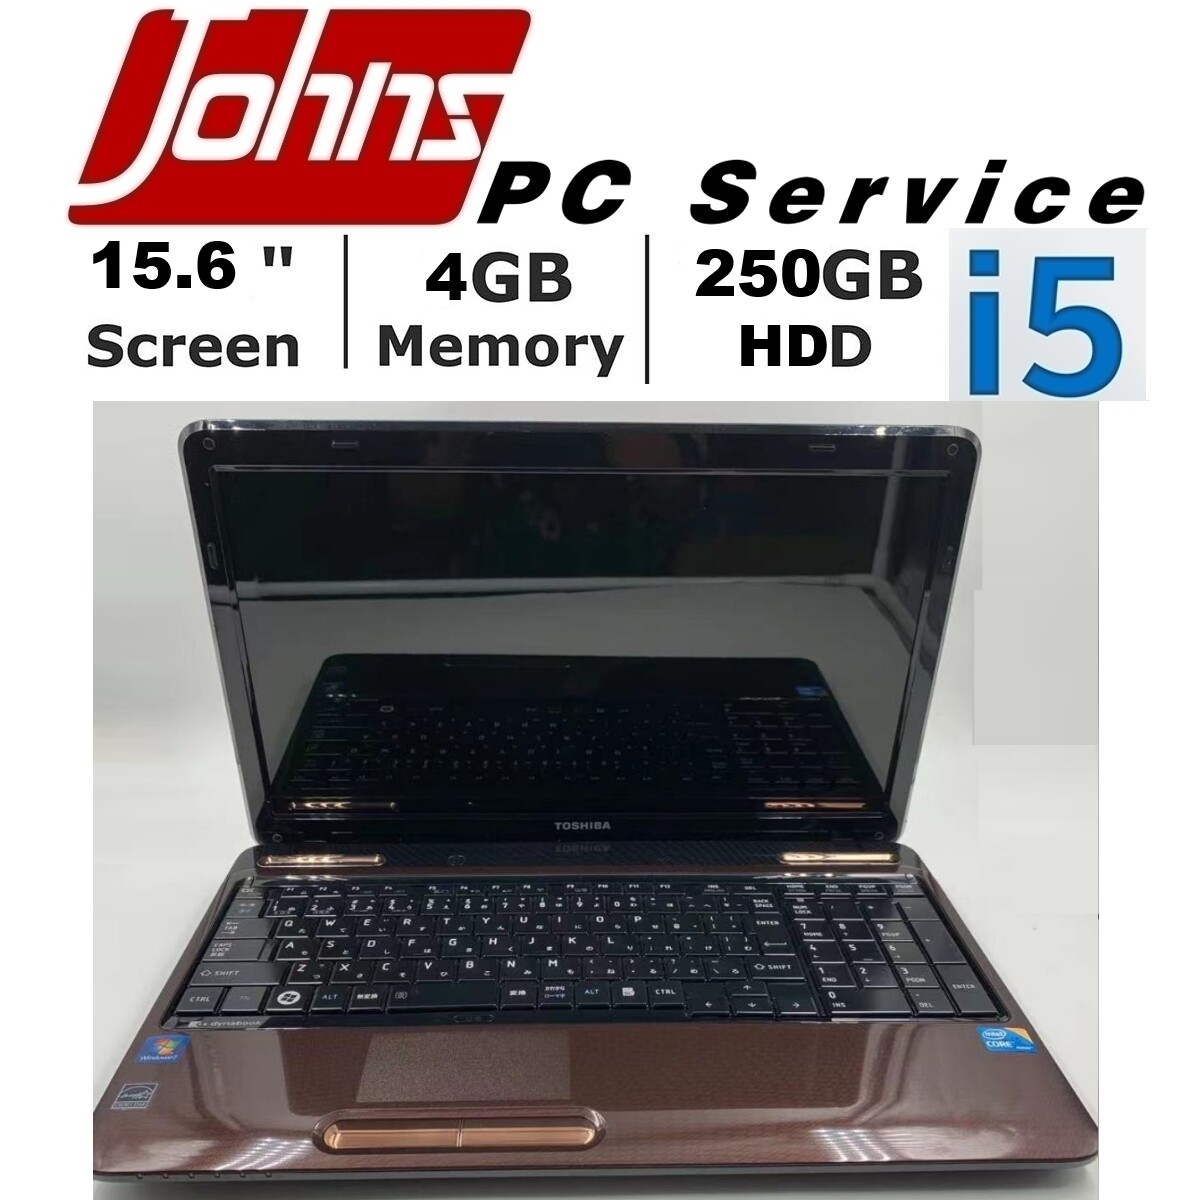 โน๊ตบุ๊คมือสอง Toshiba L650 i3/i5 15.6นิ้ว Notebook ราคาถูกๆ โน๊ตบุ๊ค laptop มือสอง โน็ตบุ๊คมือ2 โน้ตบุ๊คถูกๆ โน๊ตบุ๊คมือสอง2